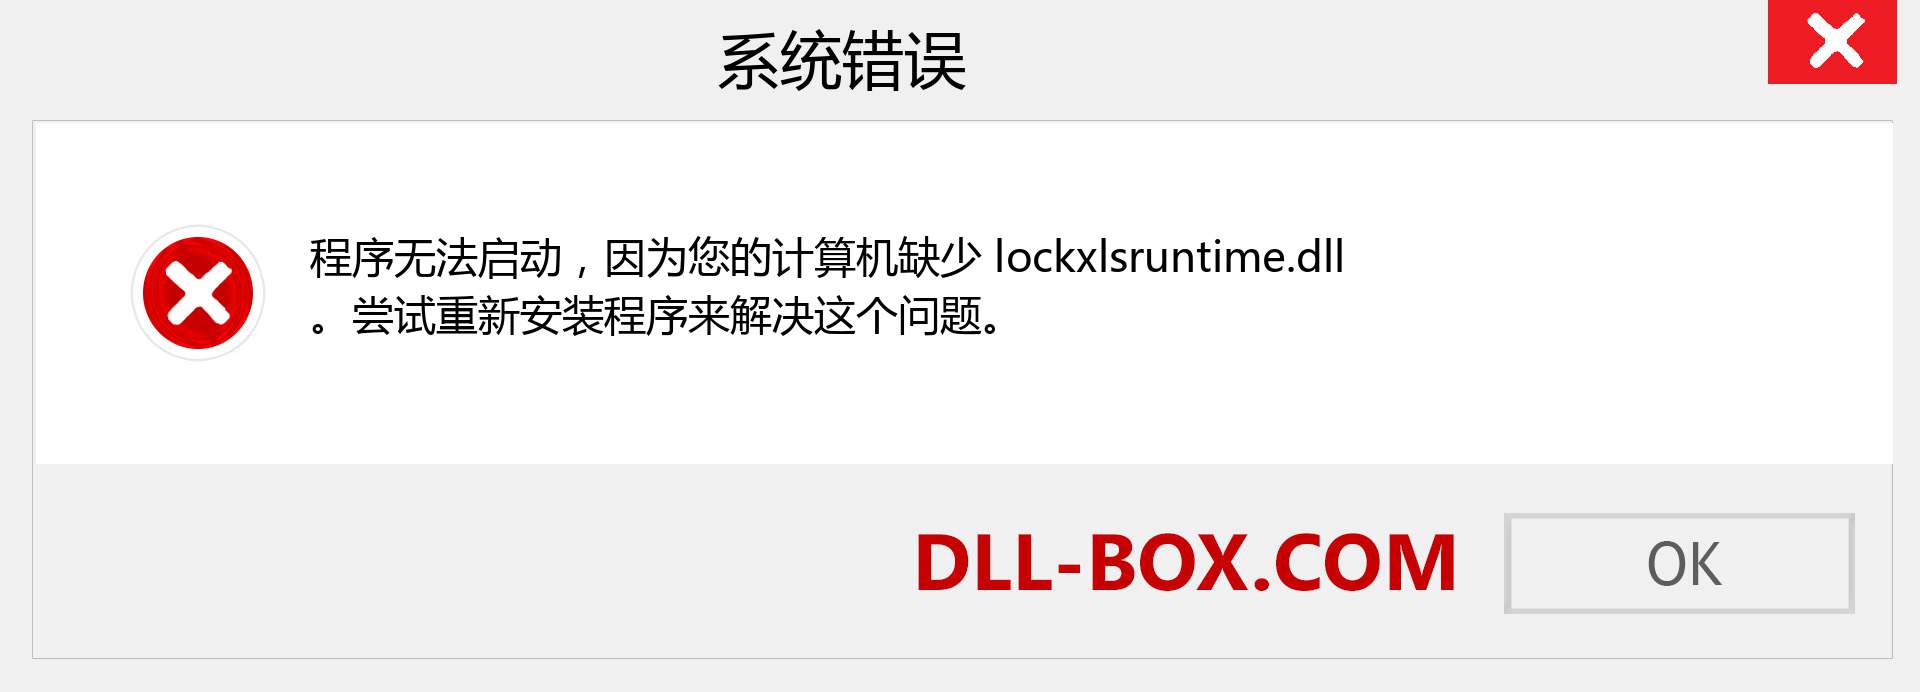 lockxlsruntime.dll 文件丢失？。 适用于 Windows 7、8、10 的下载 - 修复 Windows、照片、图像上的 lockxlsruntime dll 丢失错误